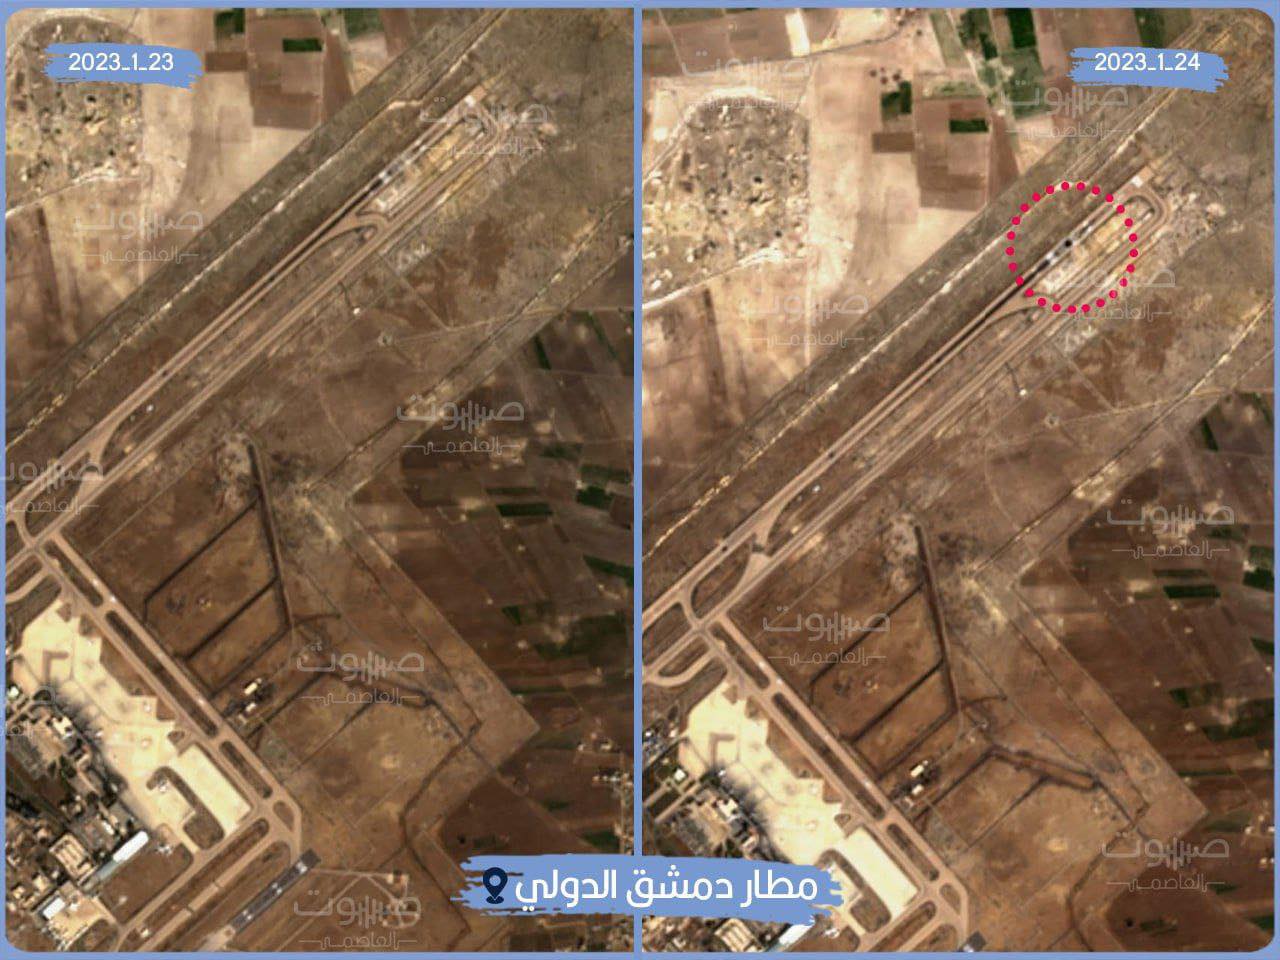 תחזוקת מסלולי ההמראה של נמל התעופה הבינלאומי של דמשק (קול הבירה)